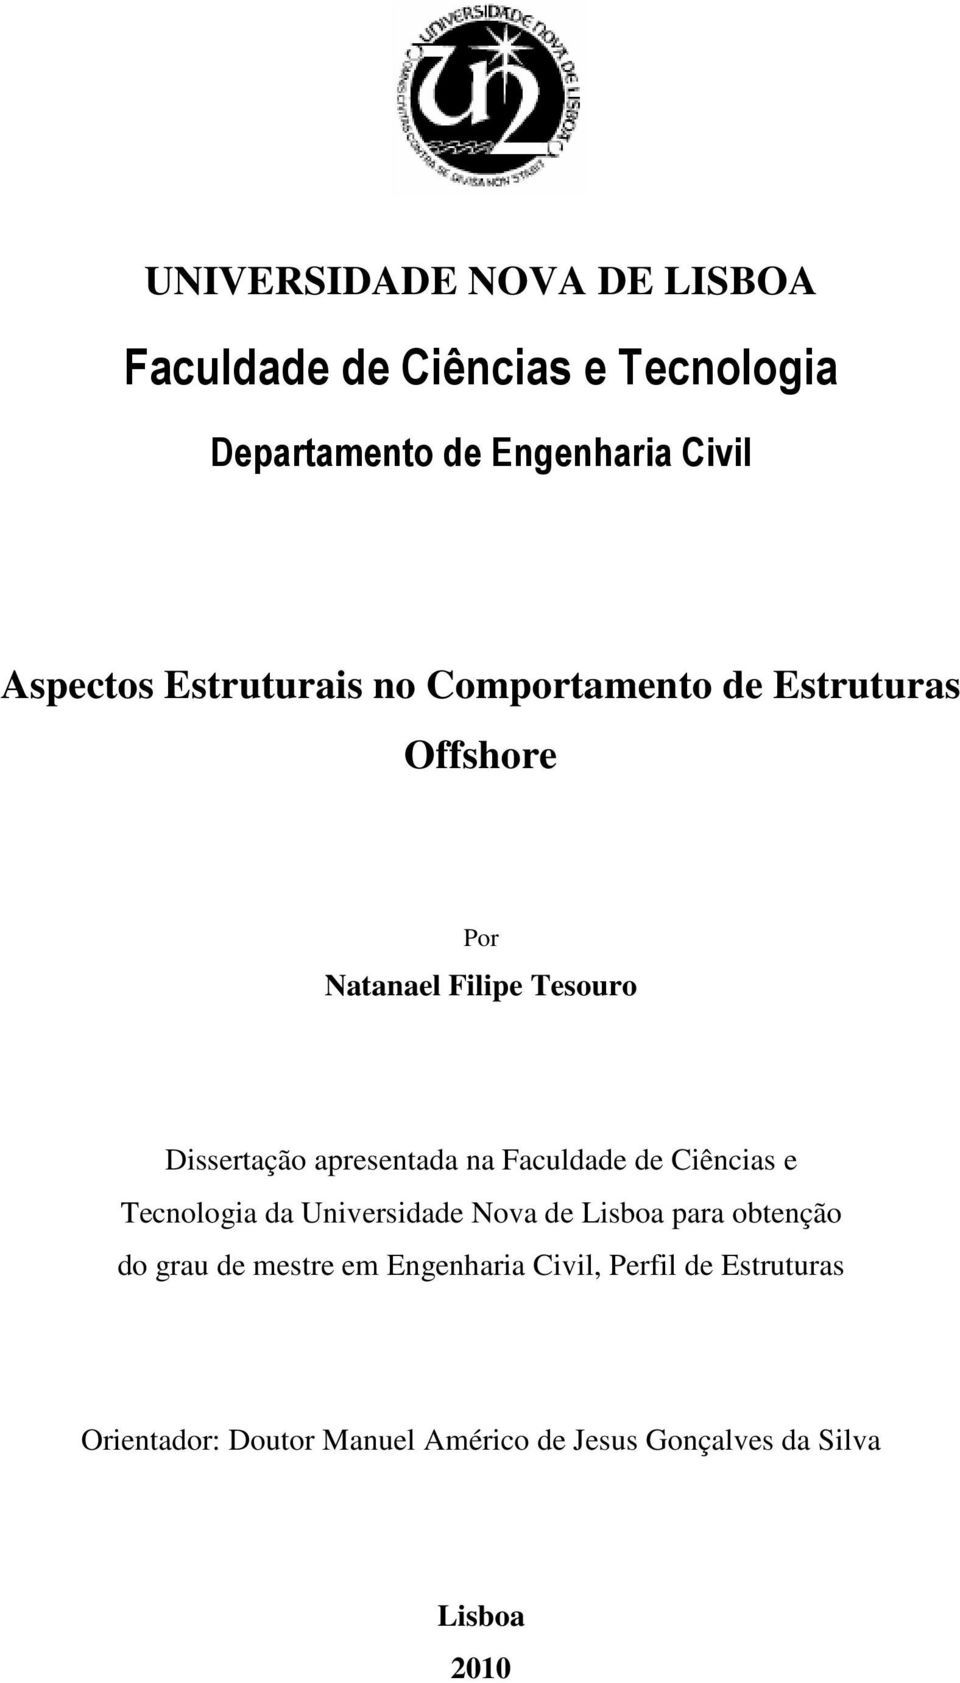 Faculdade de Ciências e Tecnologia da Universidade Nova de Lisboa para obtenção do grau de mestre em